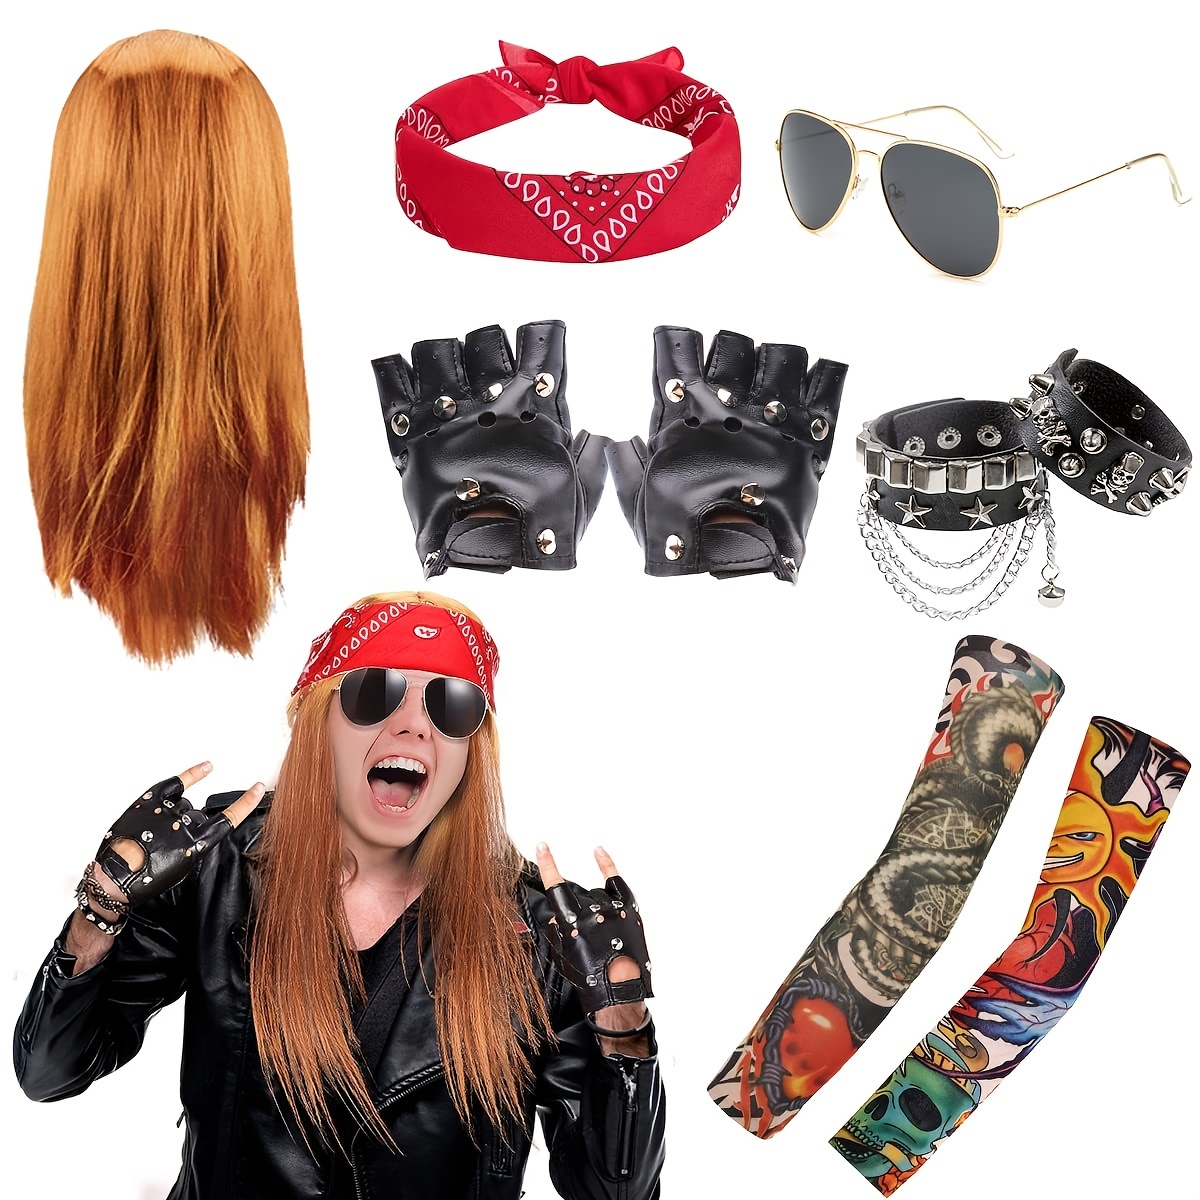 Déguisement rocker années 80 : Vente de déguisements Rock et